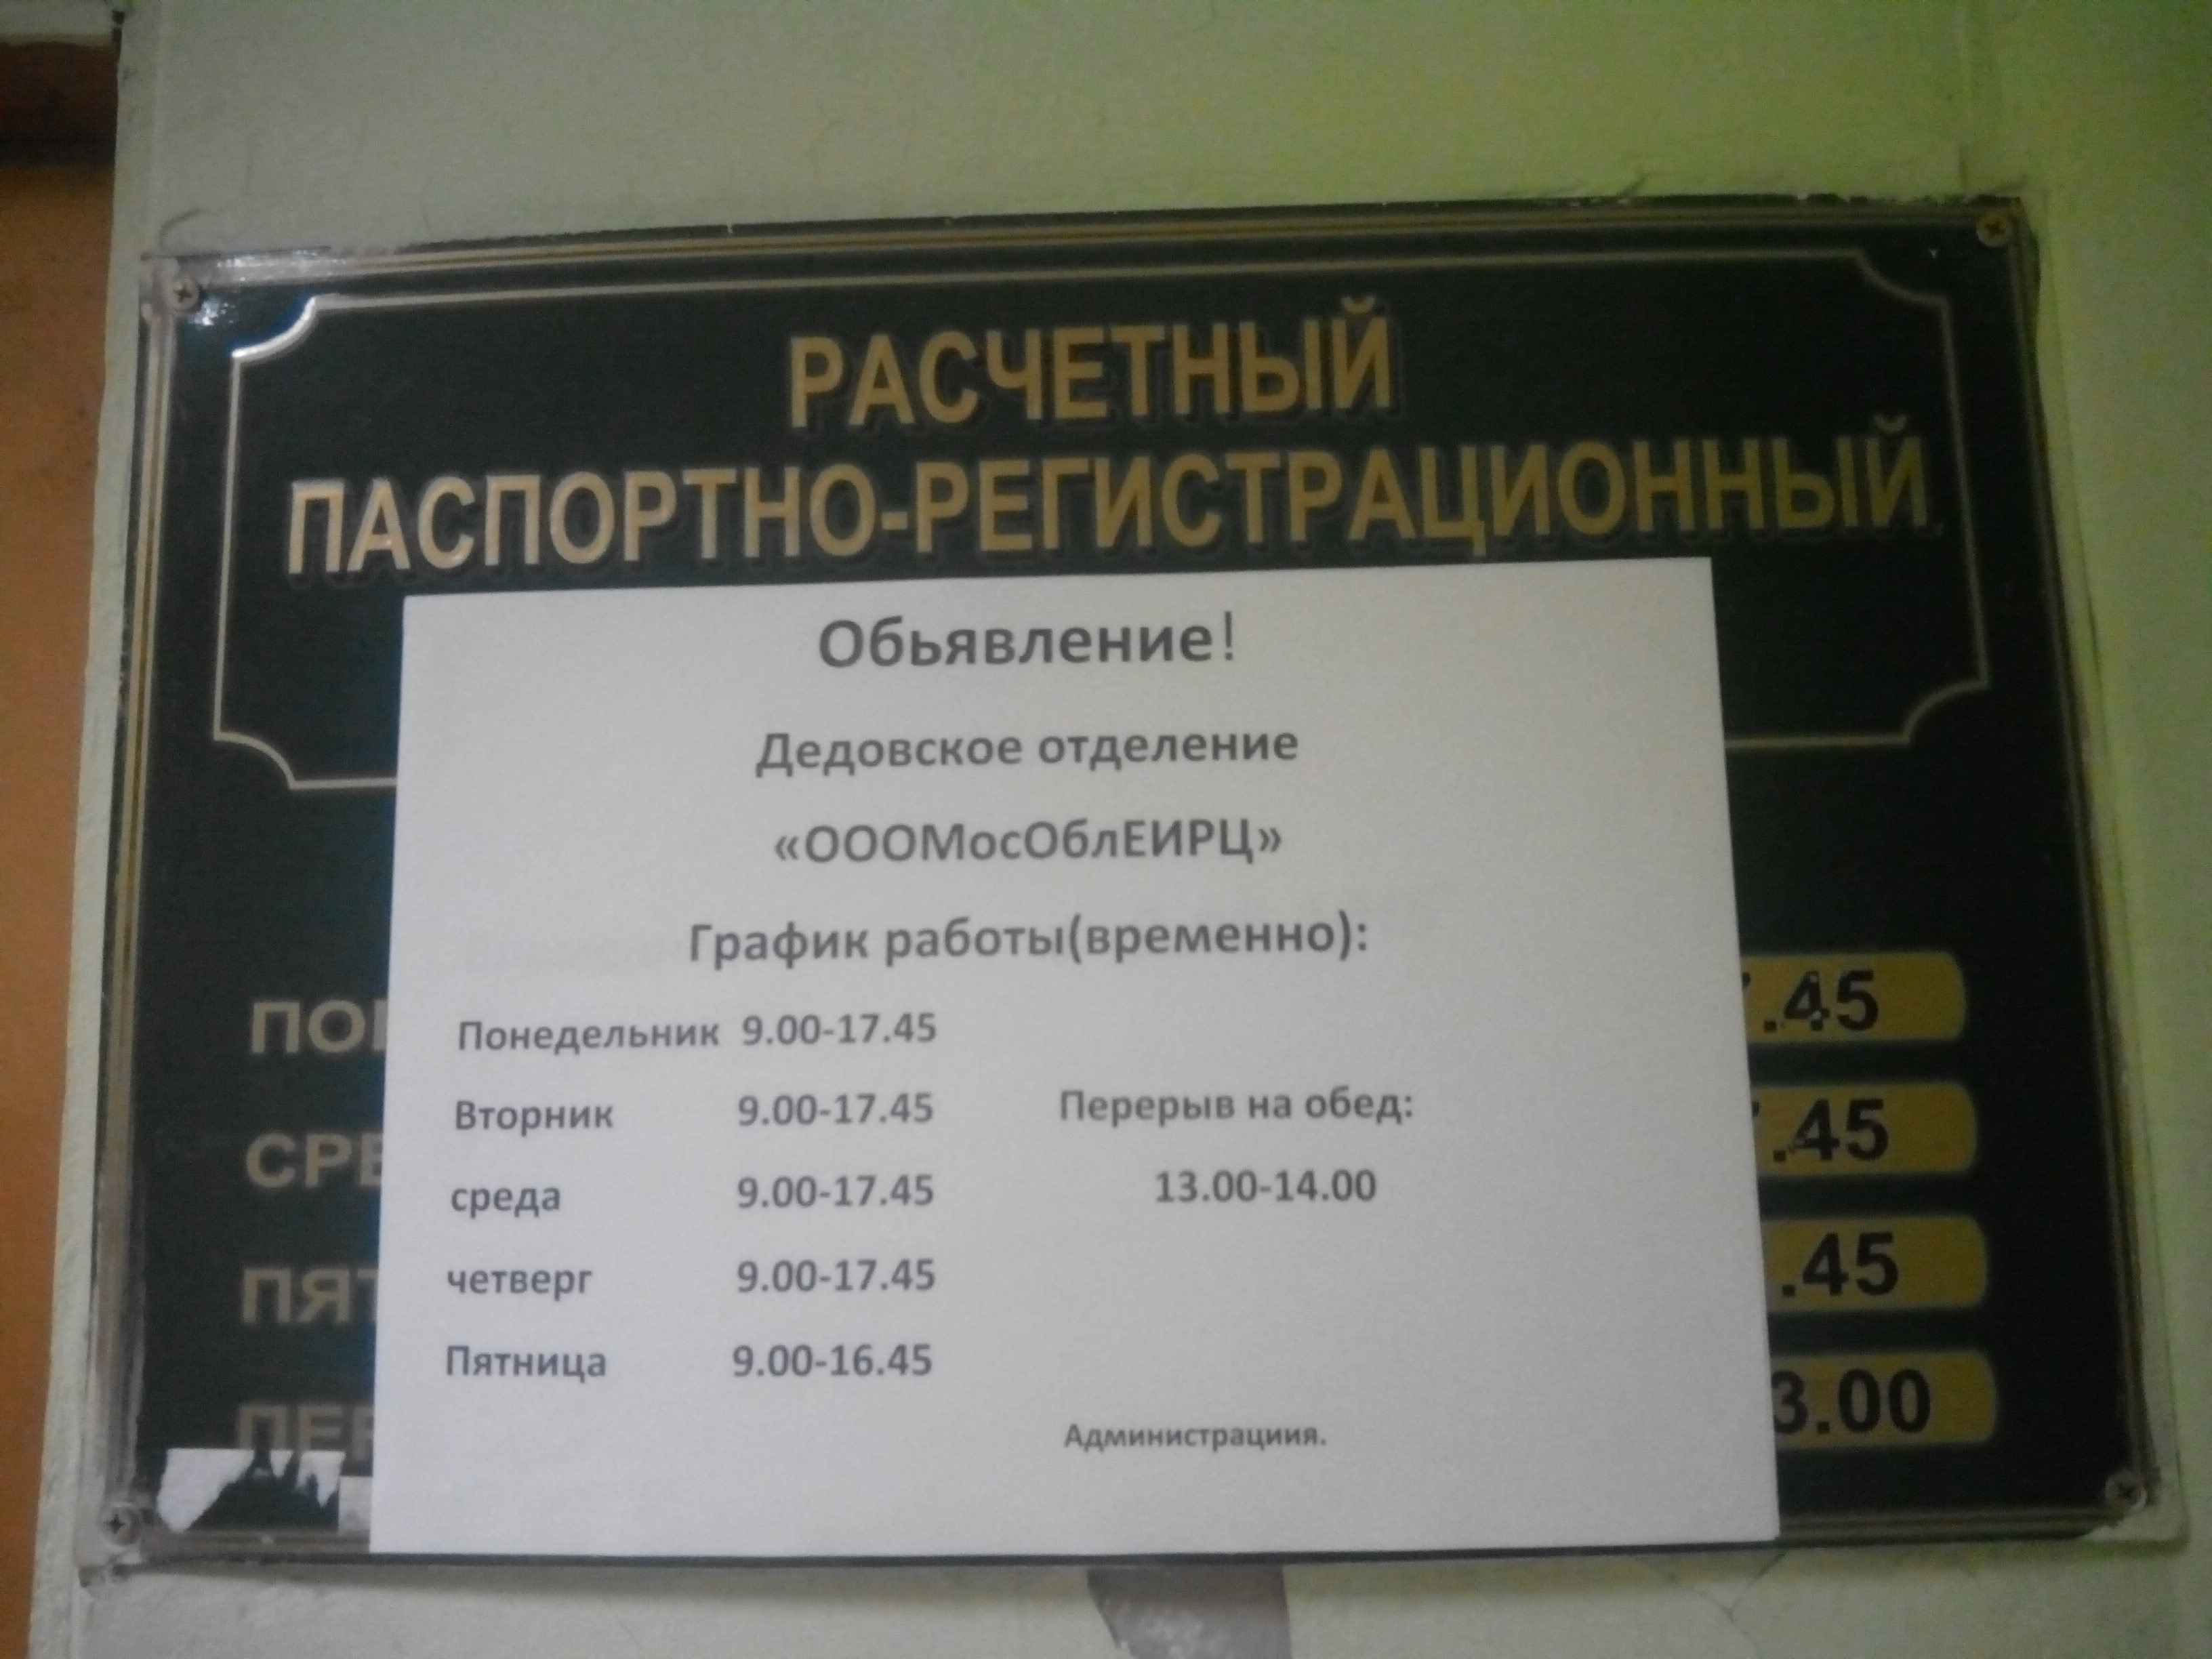 Ближайший паспортный стол. Паспортный стол. Паспортный стол Дедовск. Расписание паспортного стола в МФЦ.